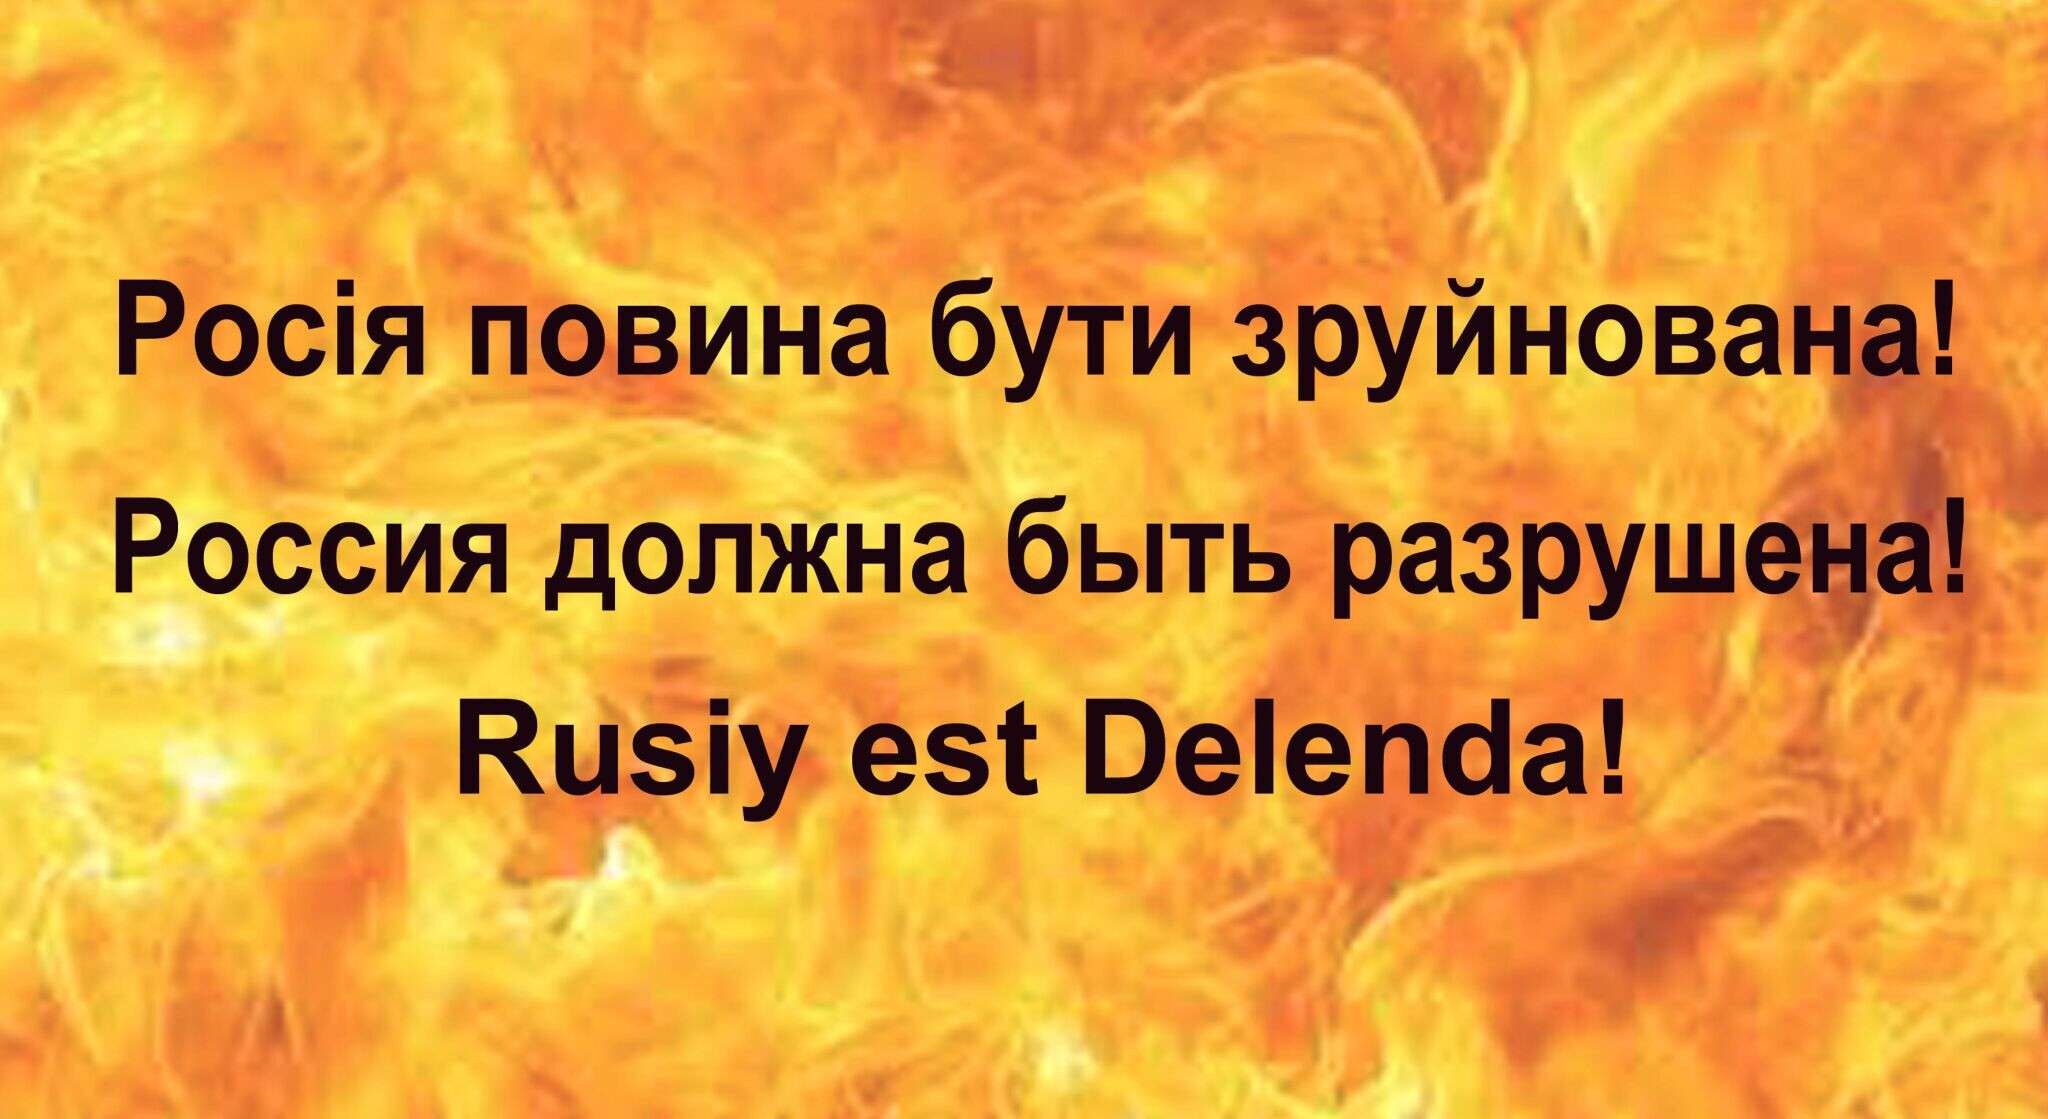 Rusiy est Delenda!